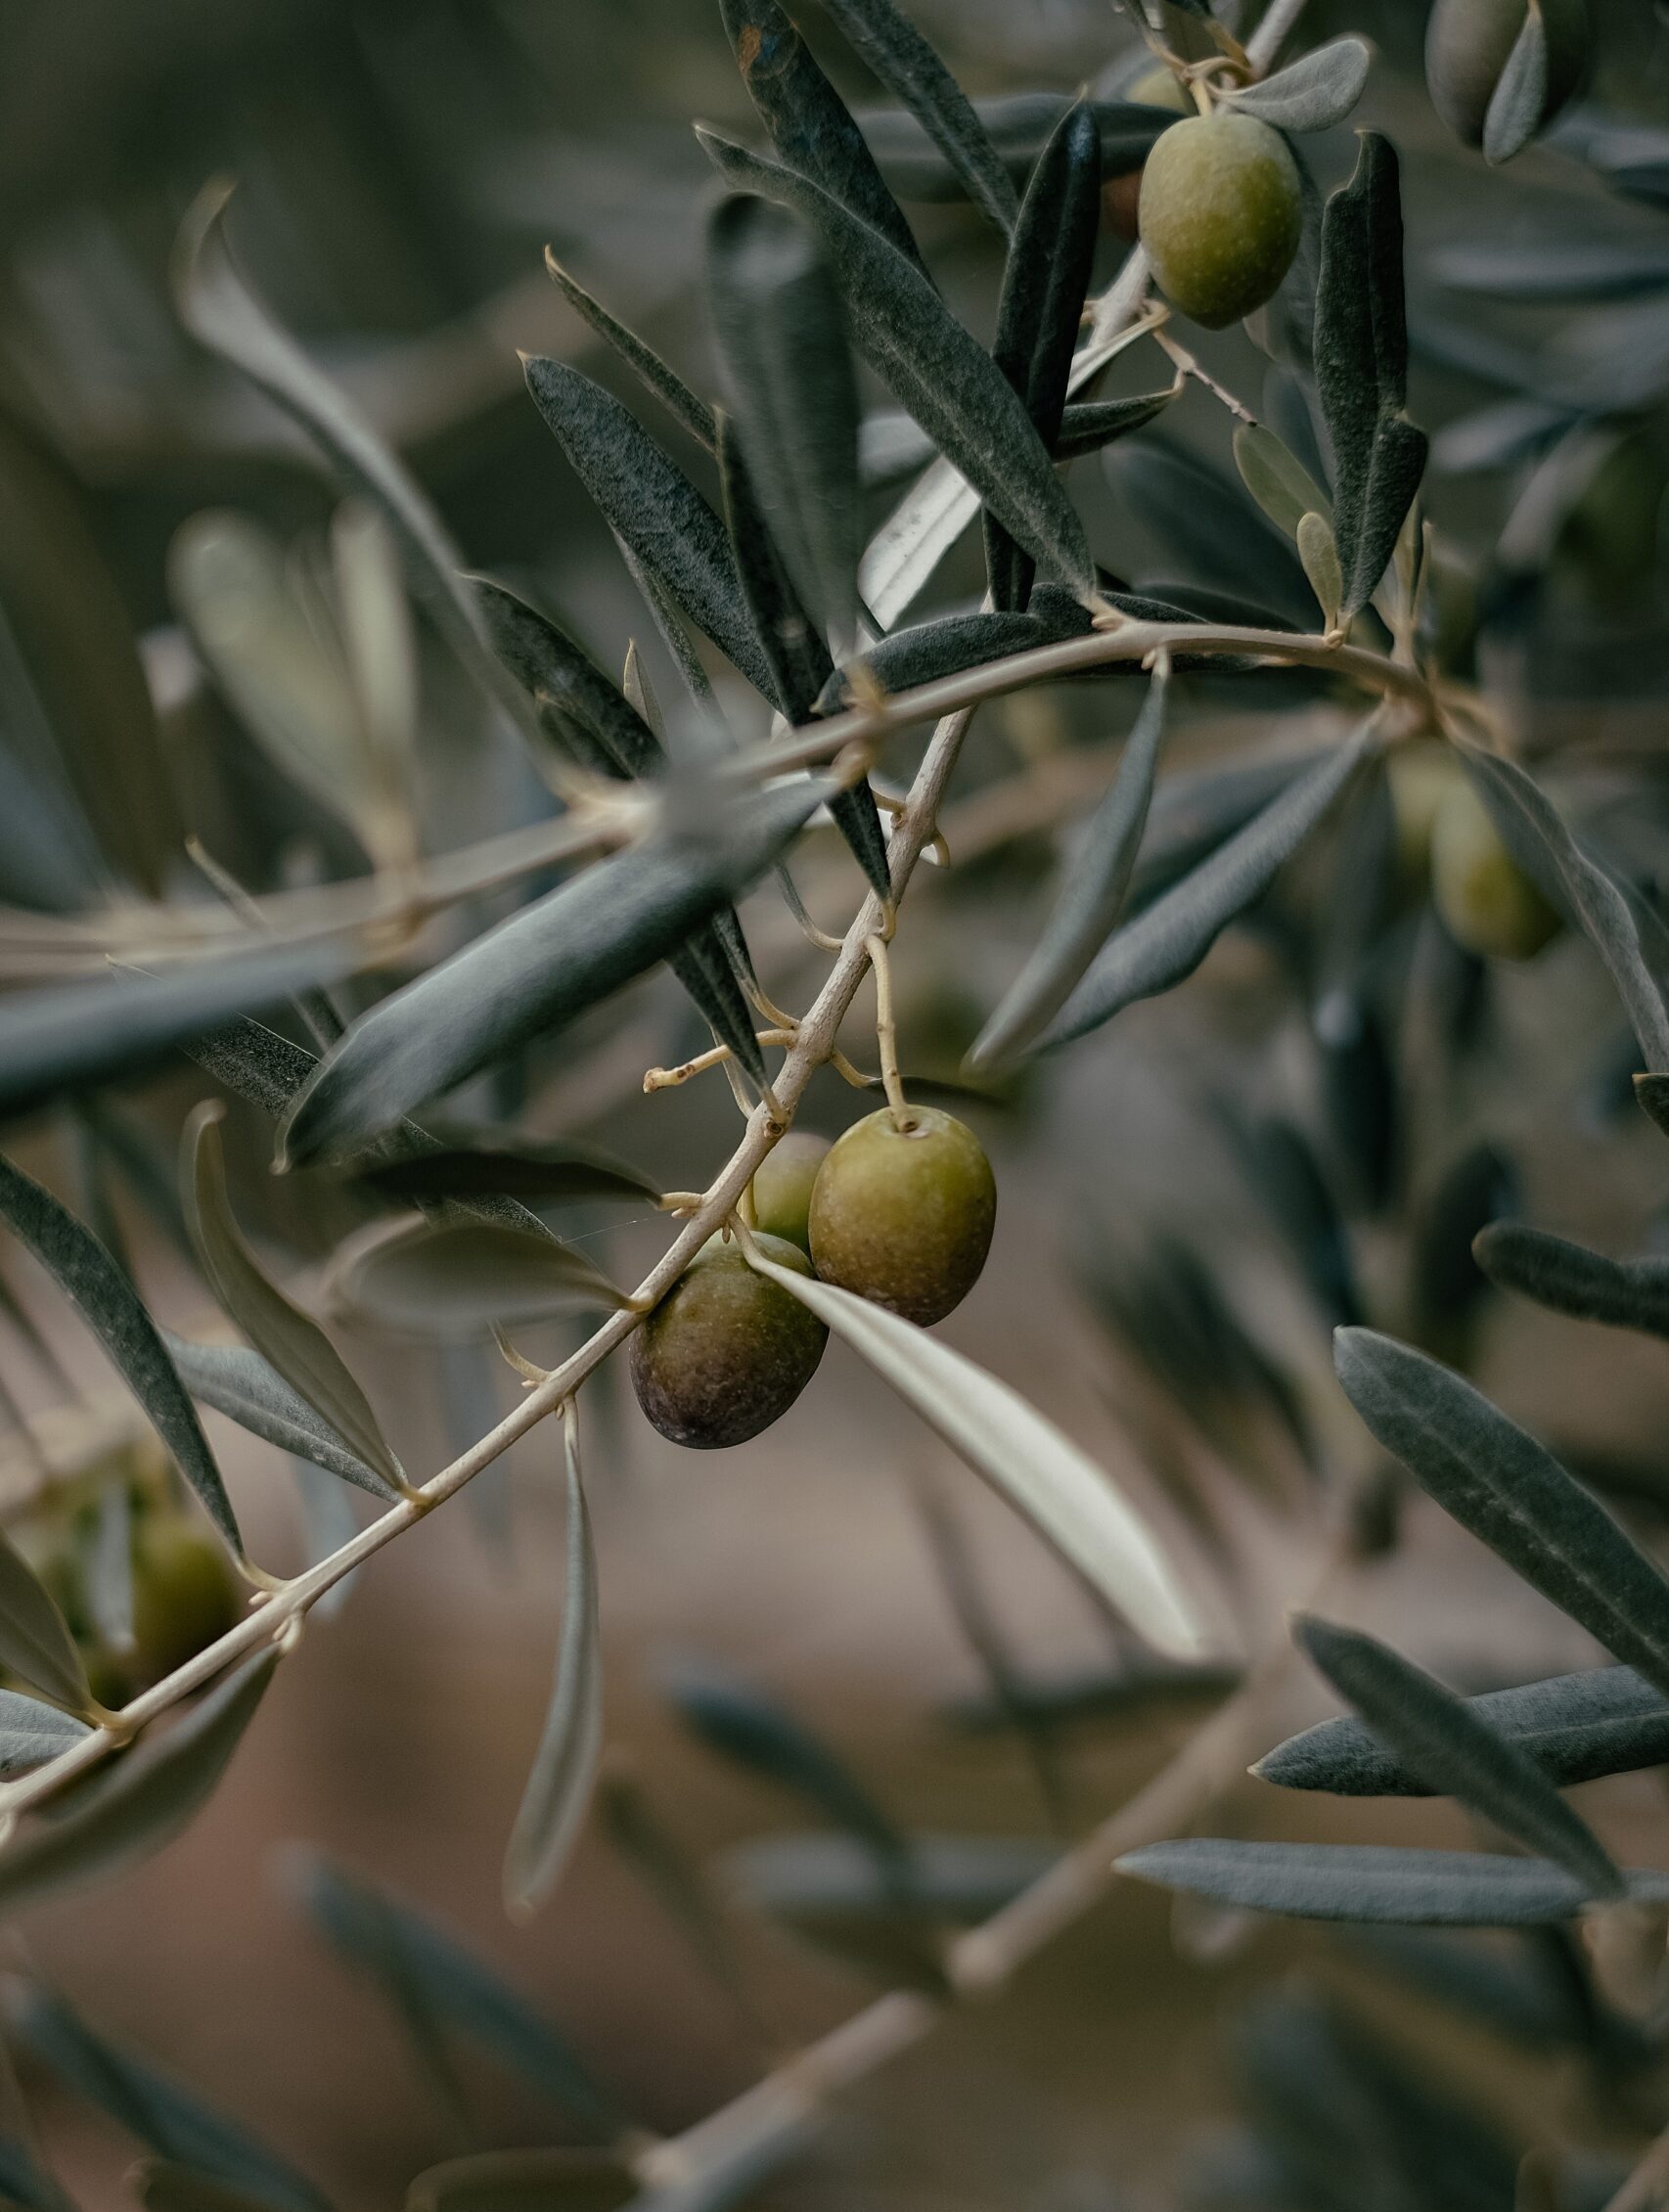 Olea er latin for oliventræet, der trives i Middelhavets behagelige klima, og olivenolien er fællesnævneren for områdets forskellige velsmagende og sunde retter, som vi altid tilbereder med de bedste tilgængelige råvarer.